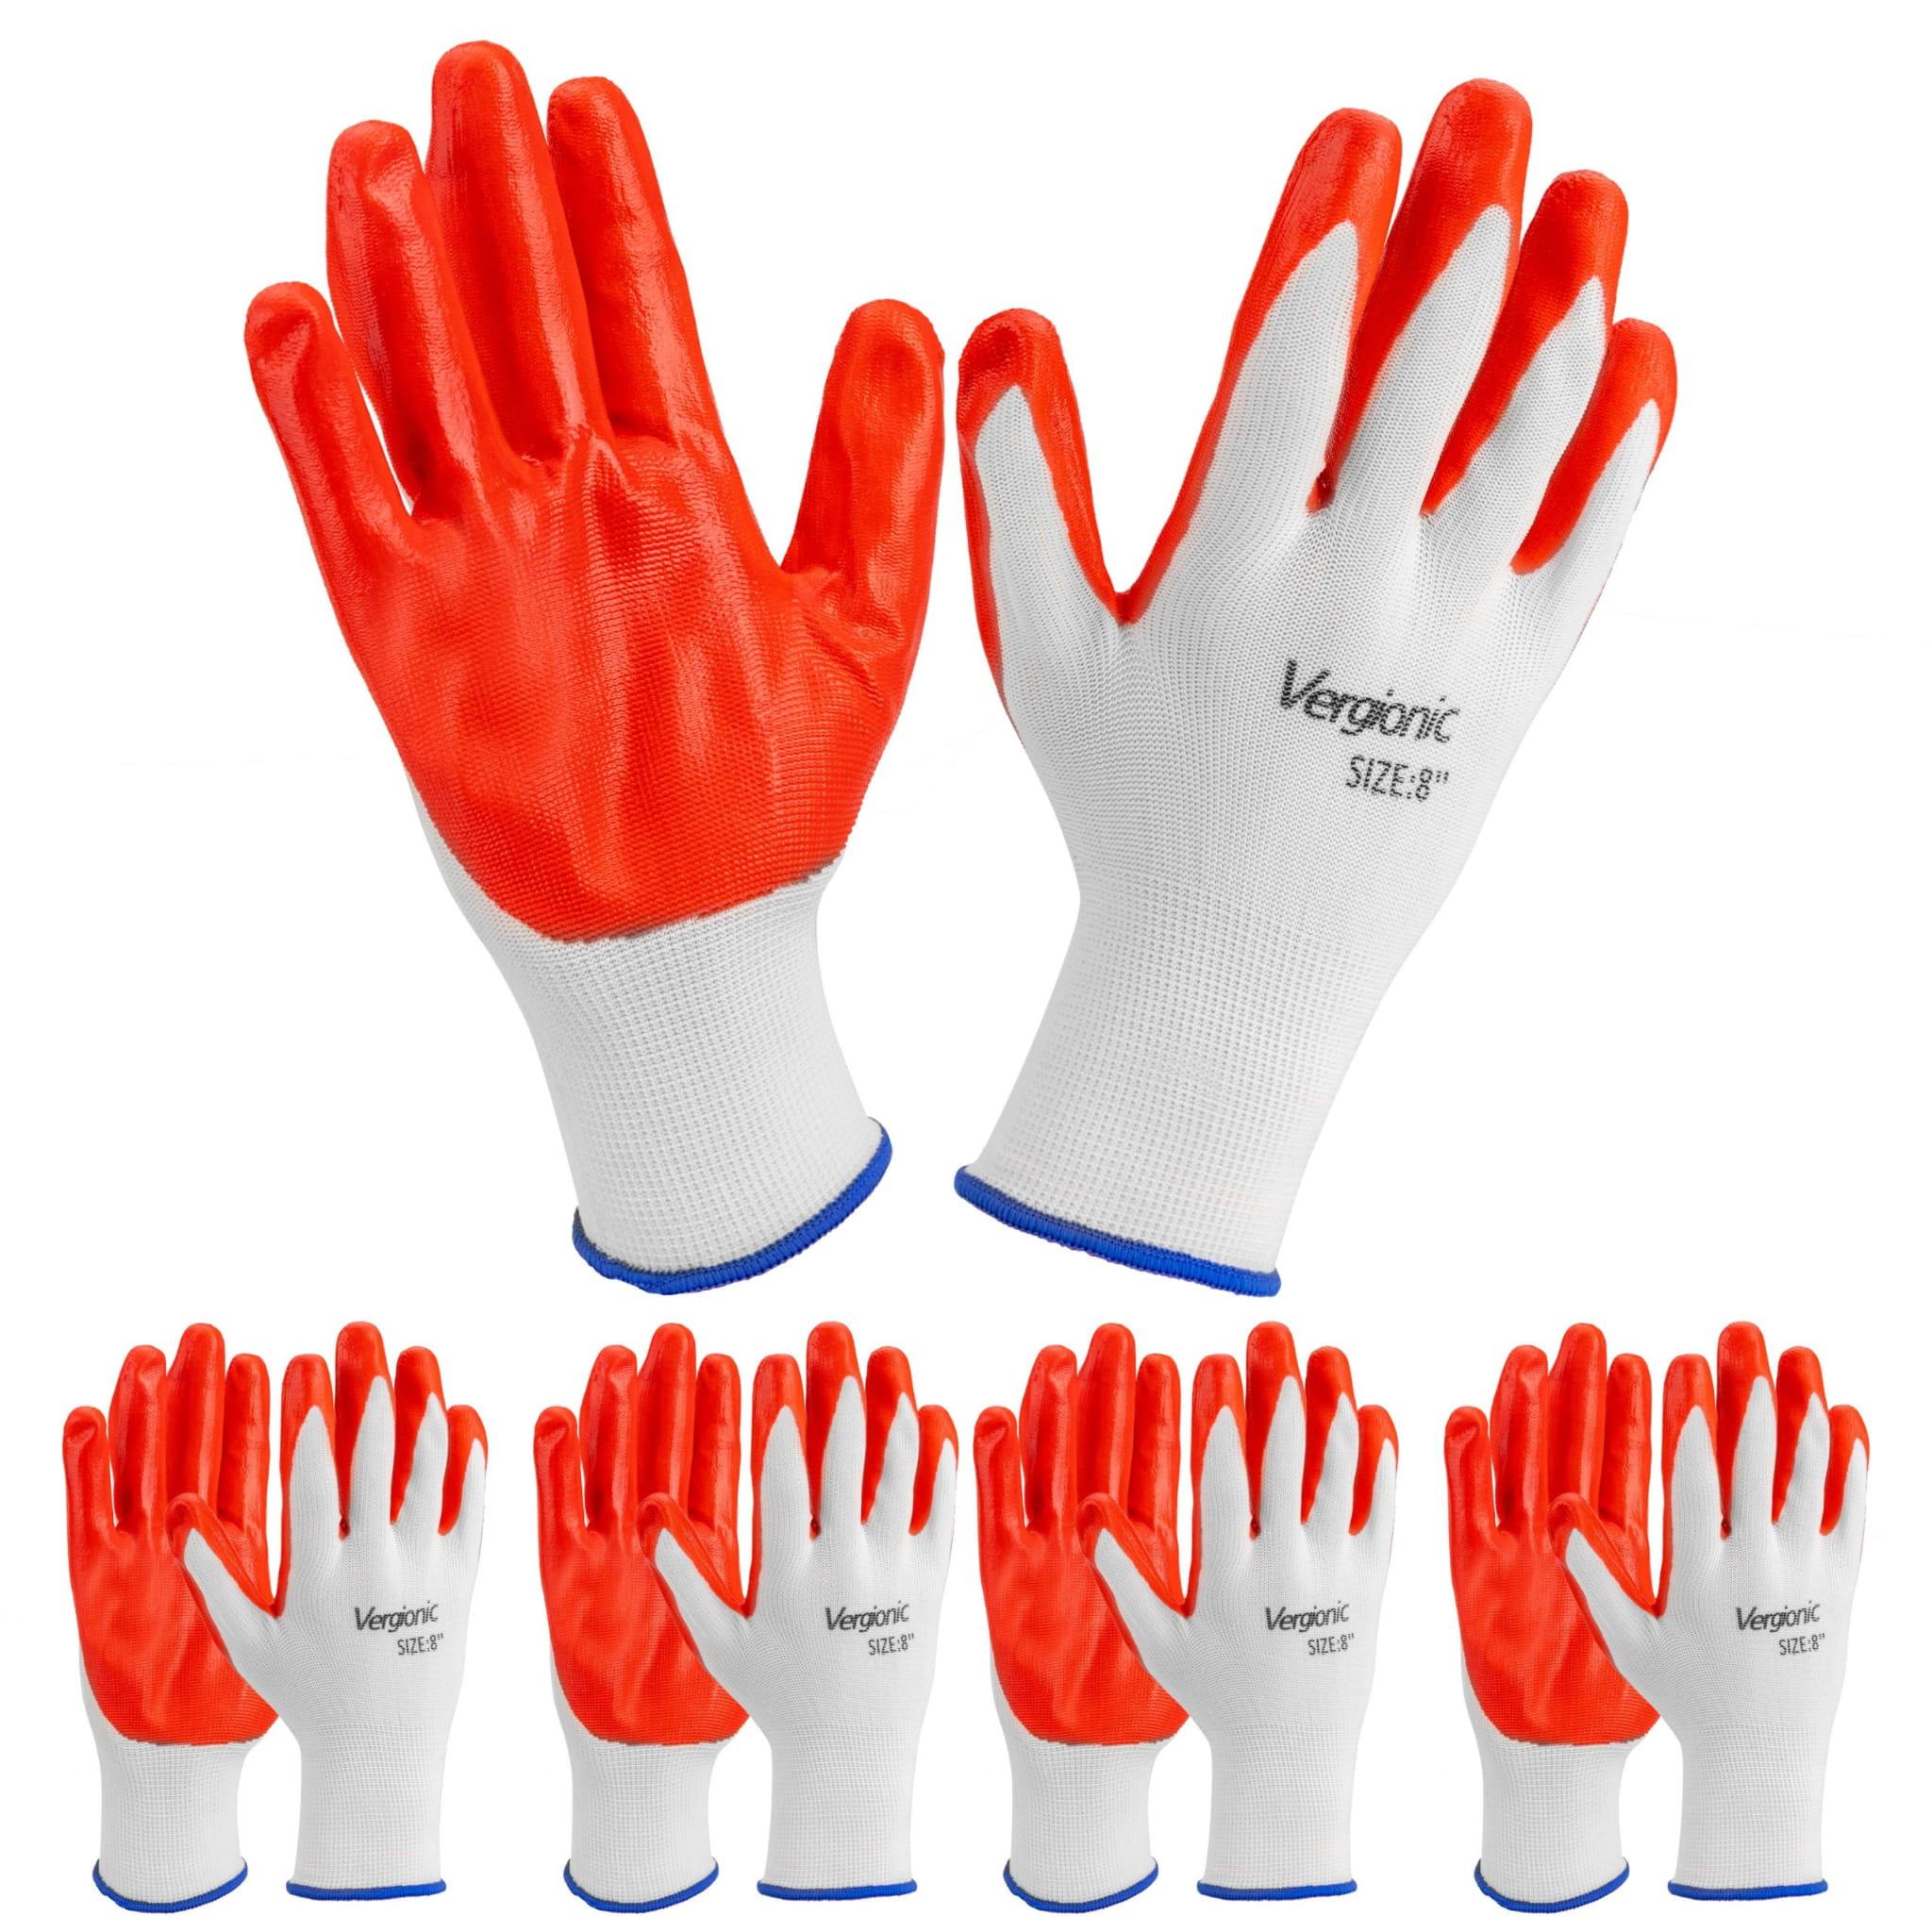 Berge Pracovní rukavice velikost 8'' - 5 párů